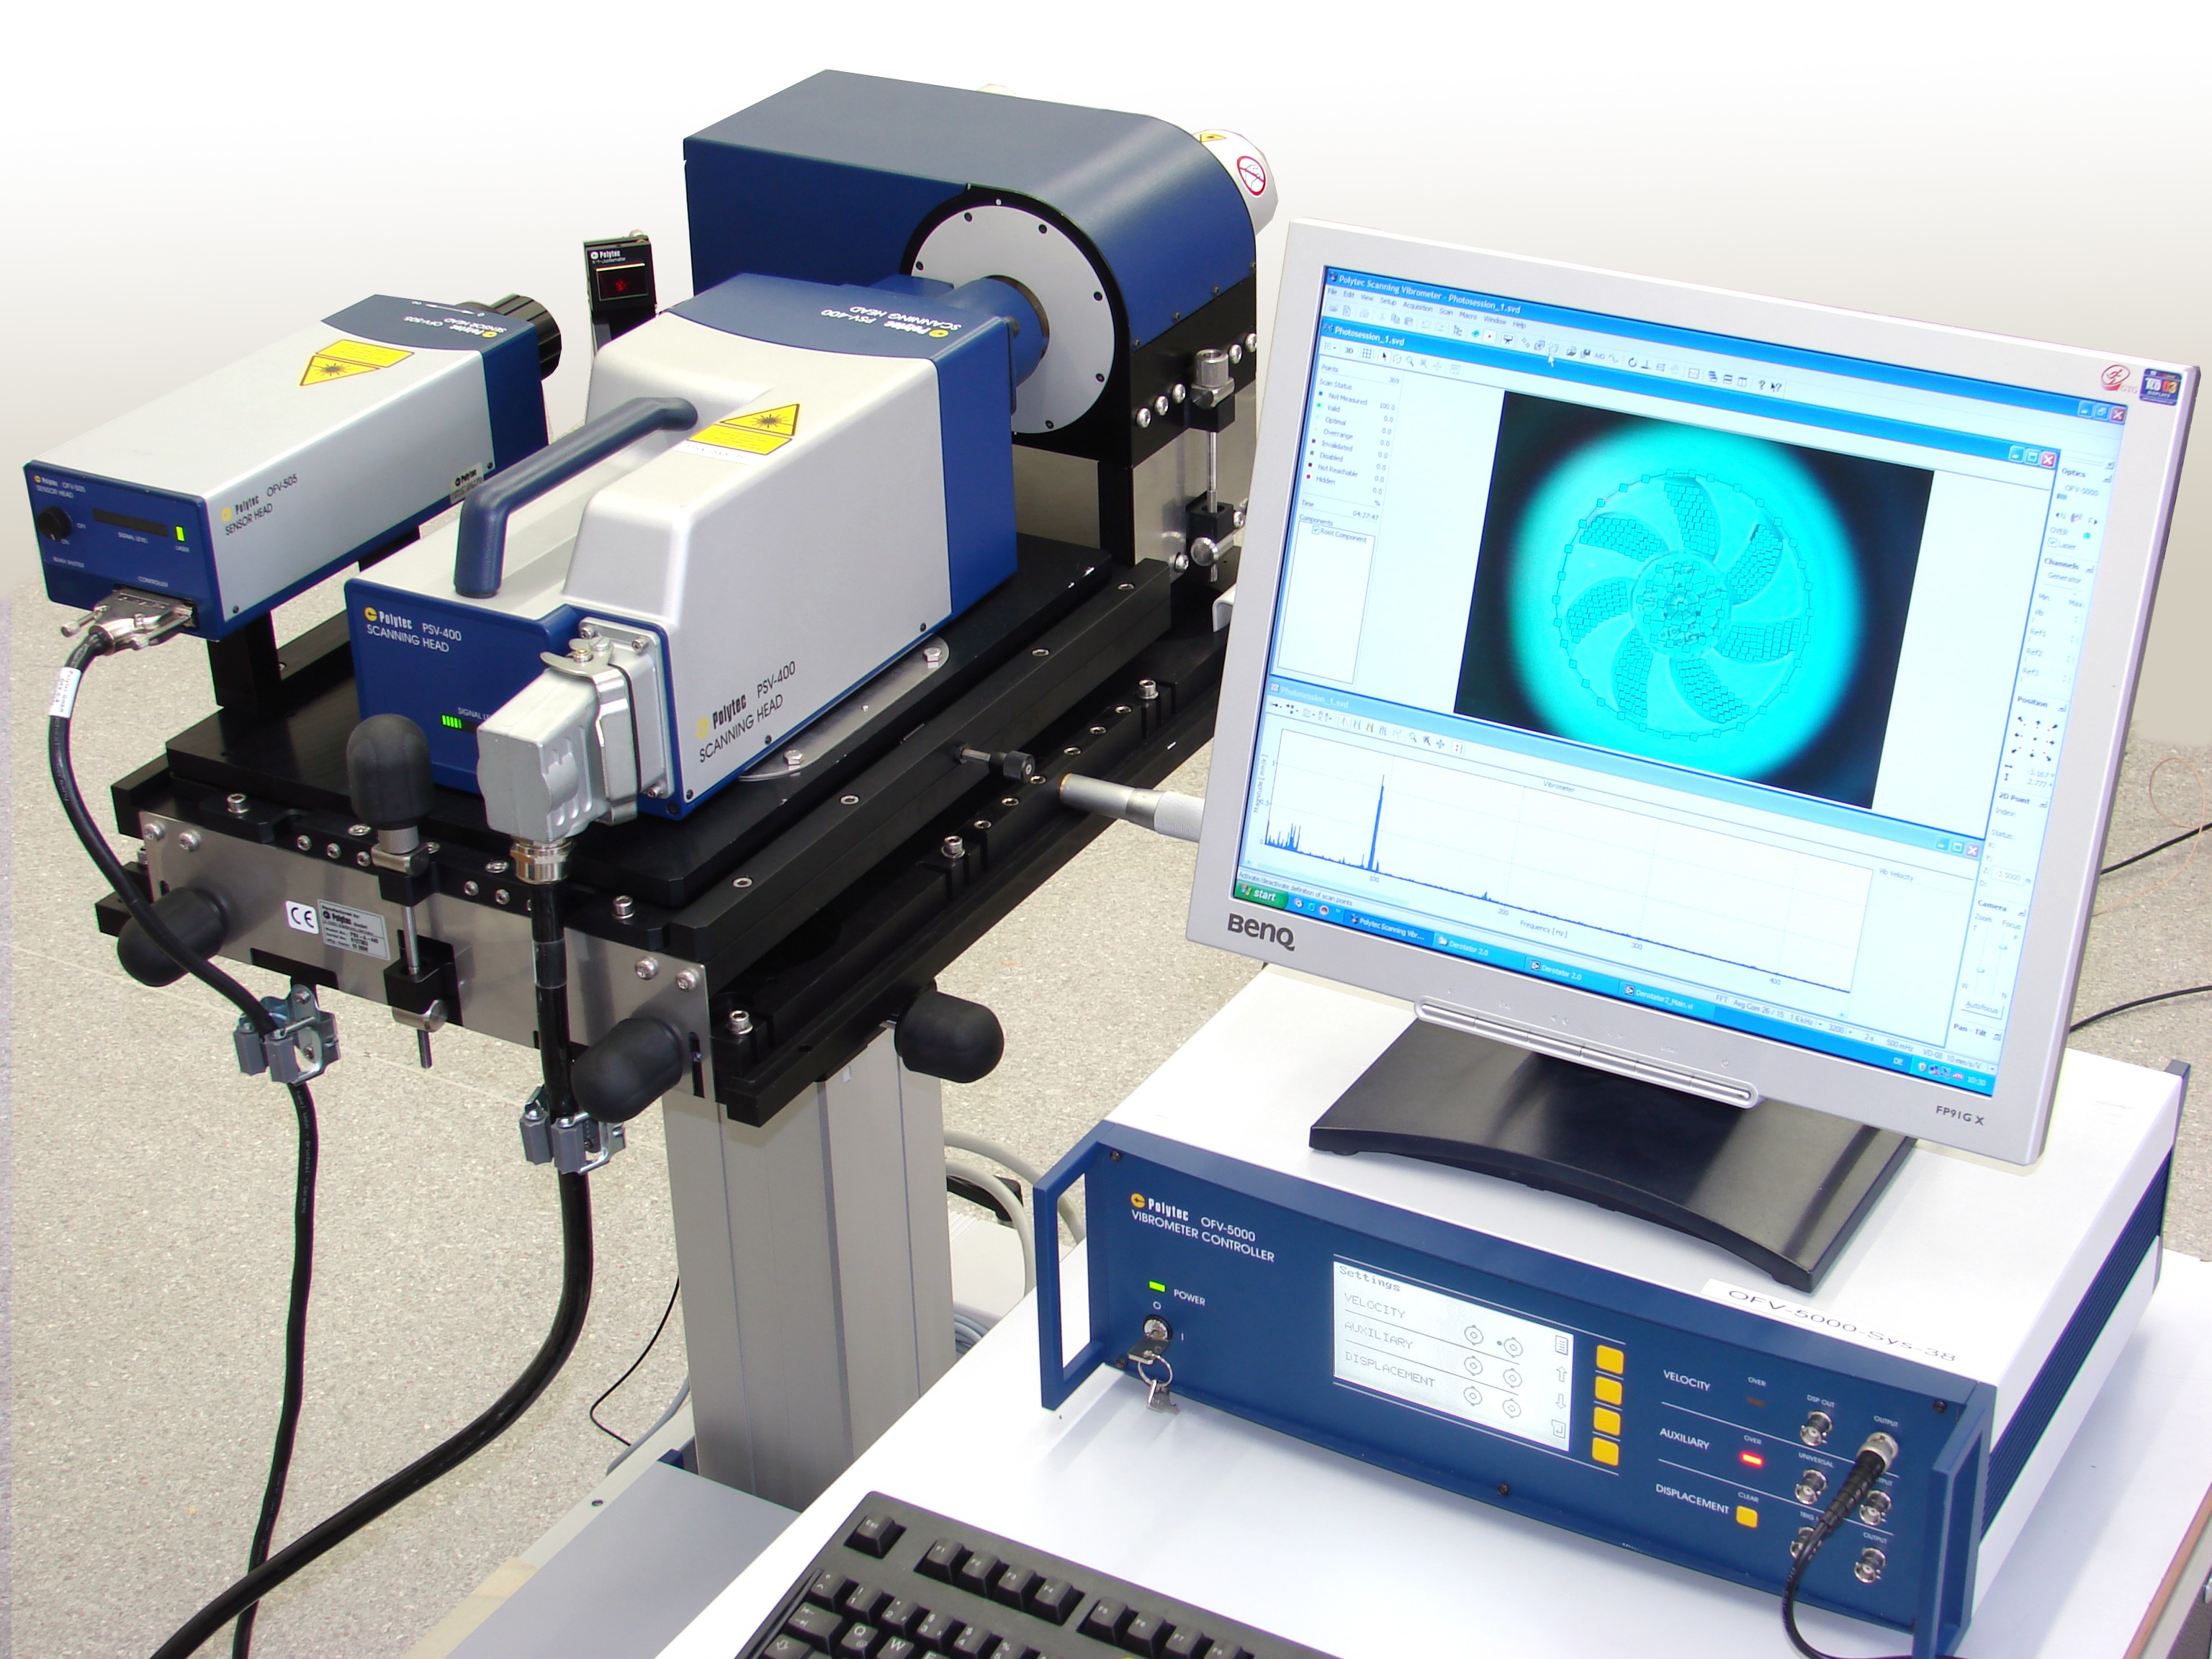 PSV-500-3D 掃描式激光測振儀